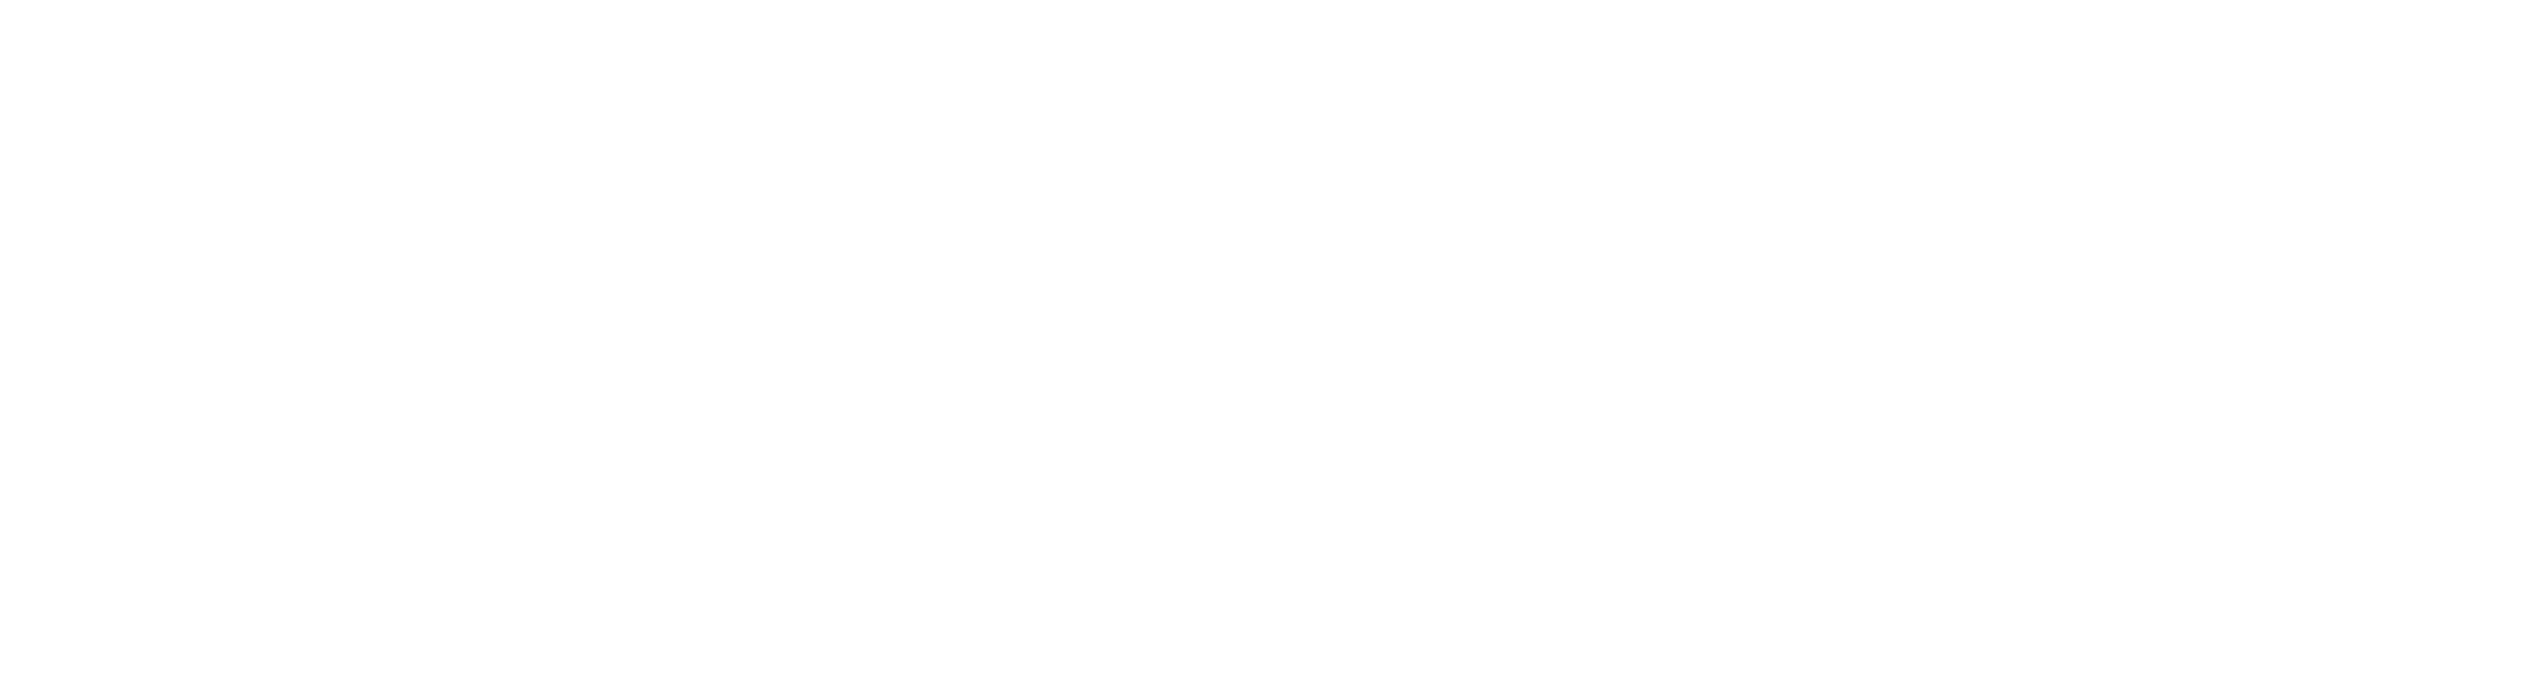 Pedigree Media Innovations